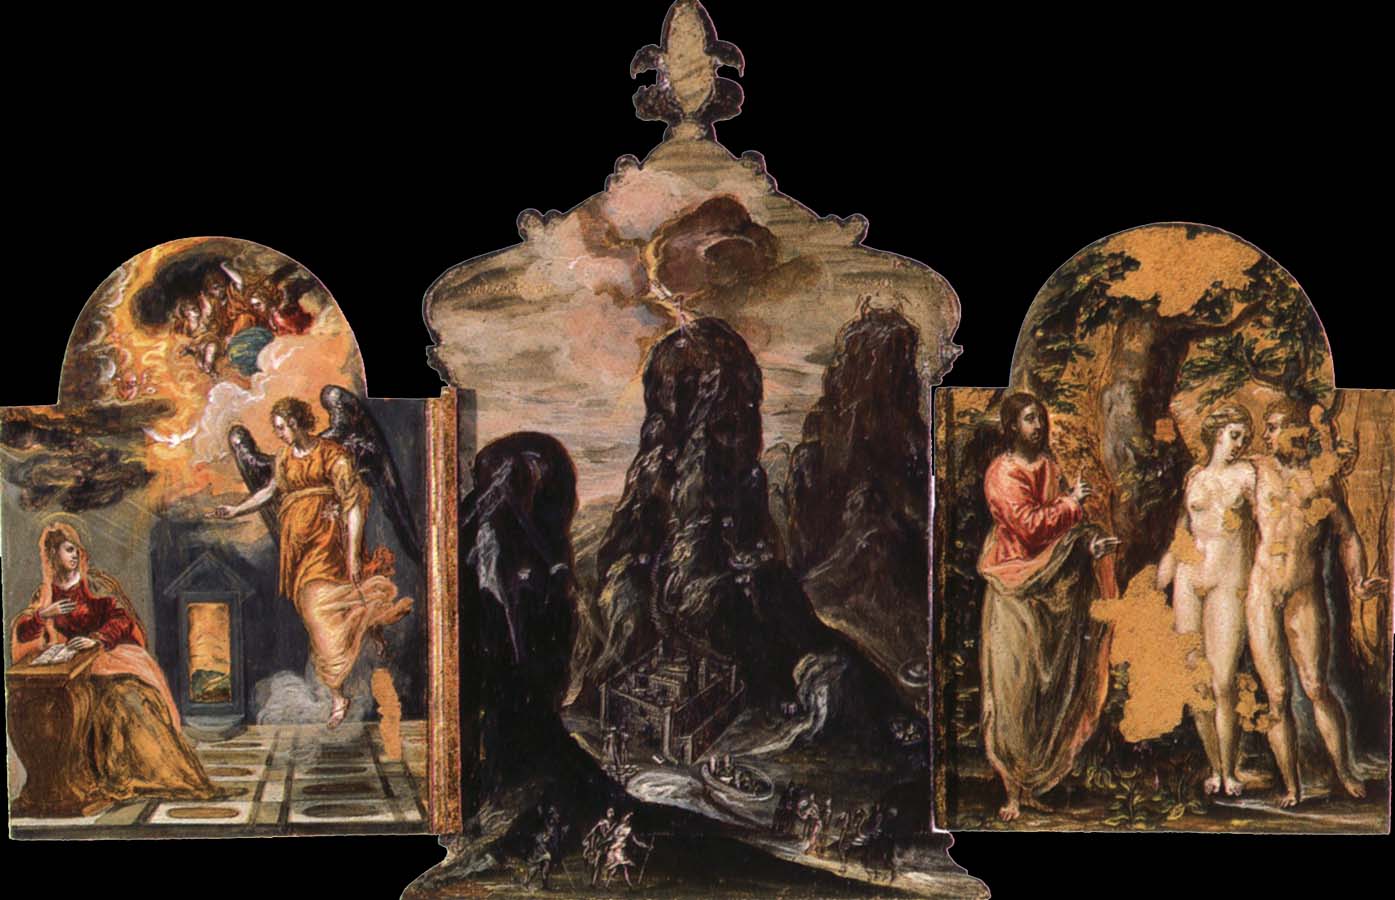 The Modena Triptych